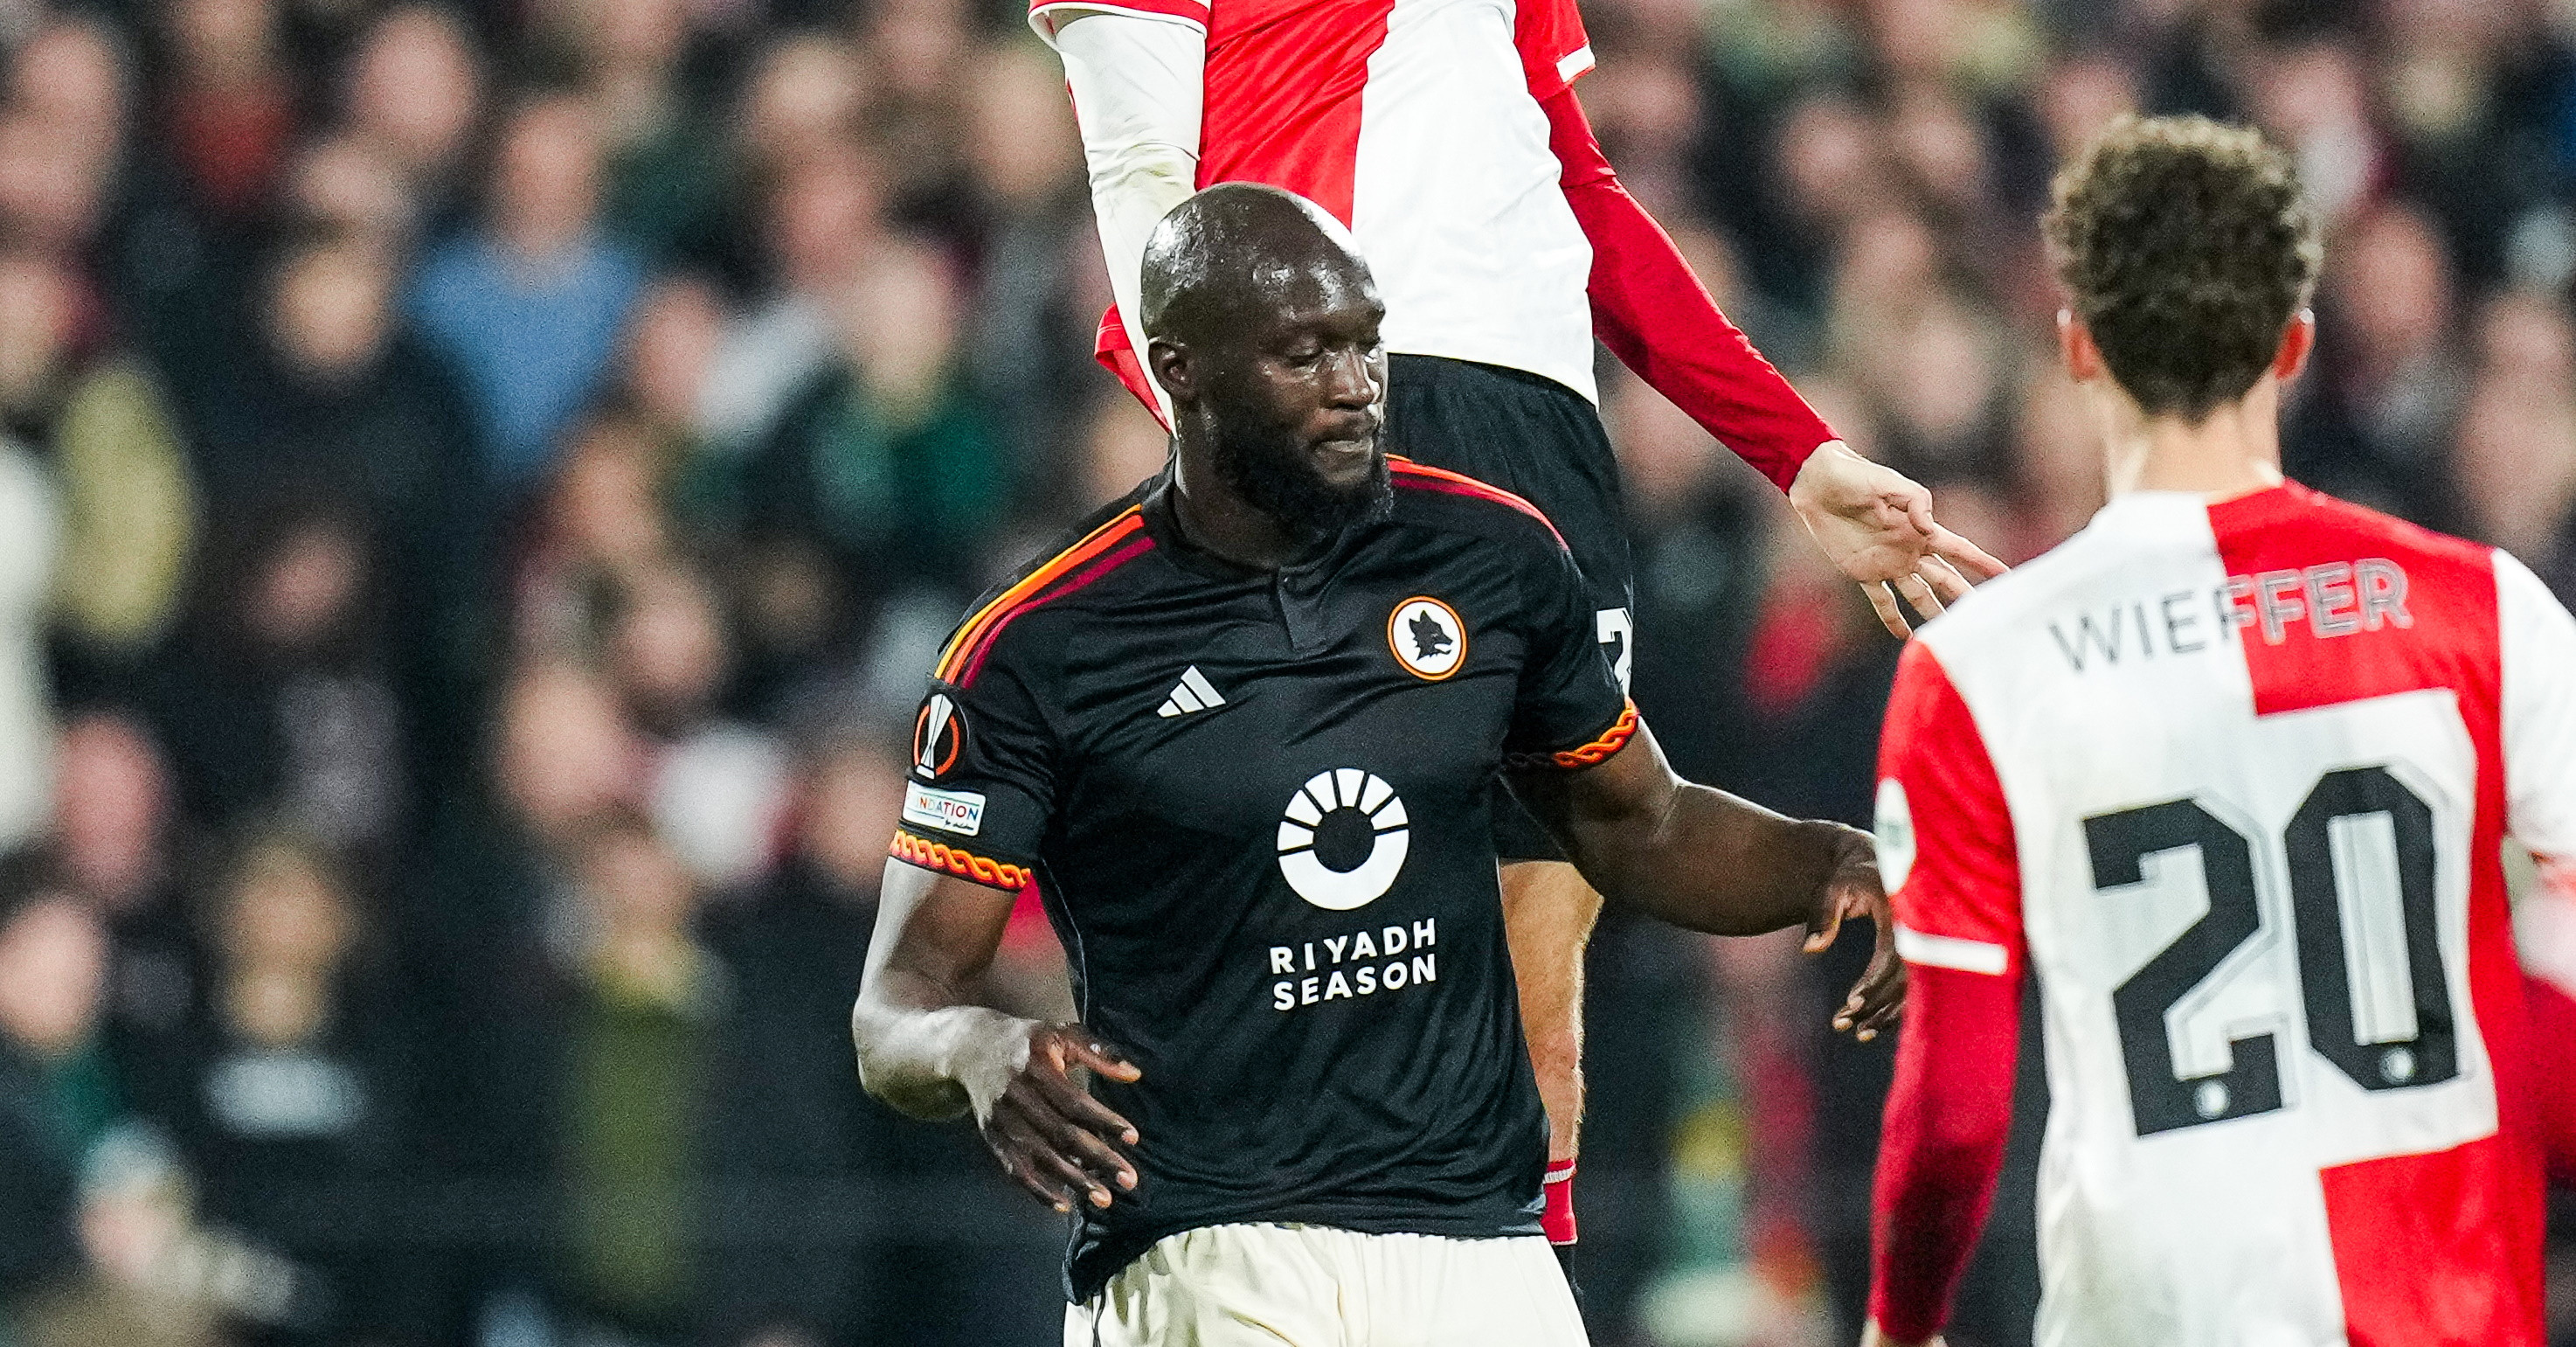 Lukaku zag sterk Feyenoord: "Karsdorp en ik probeerden de ploeg daarop voor te bereiden"